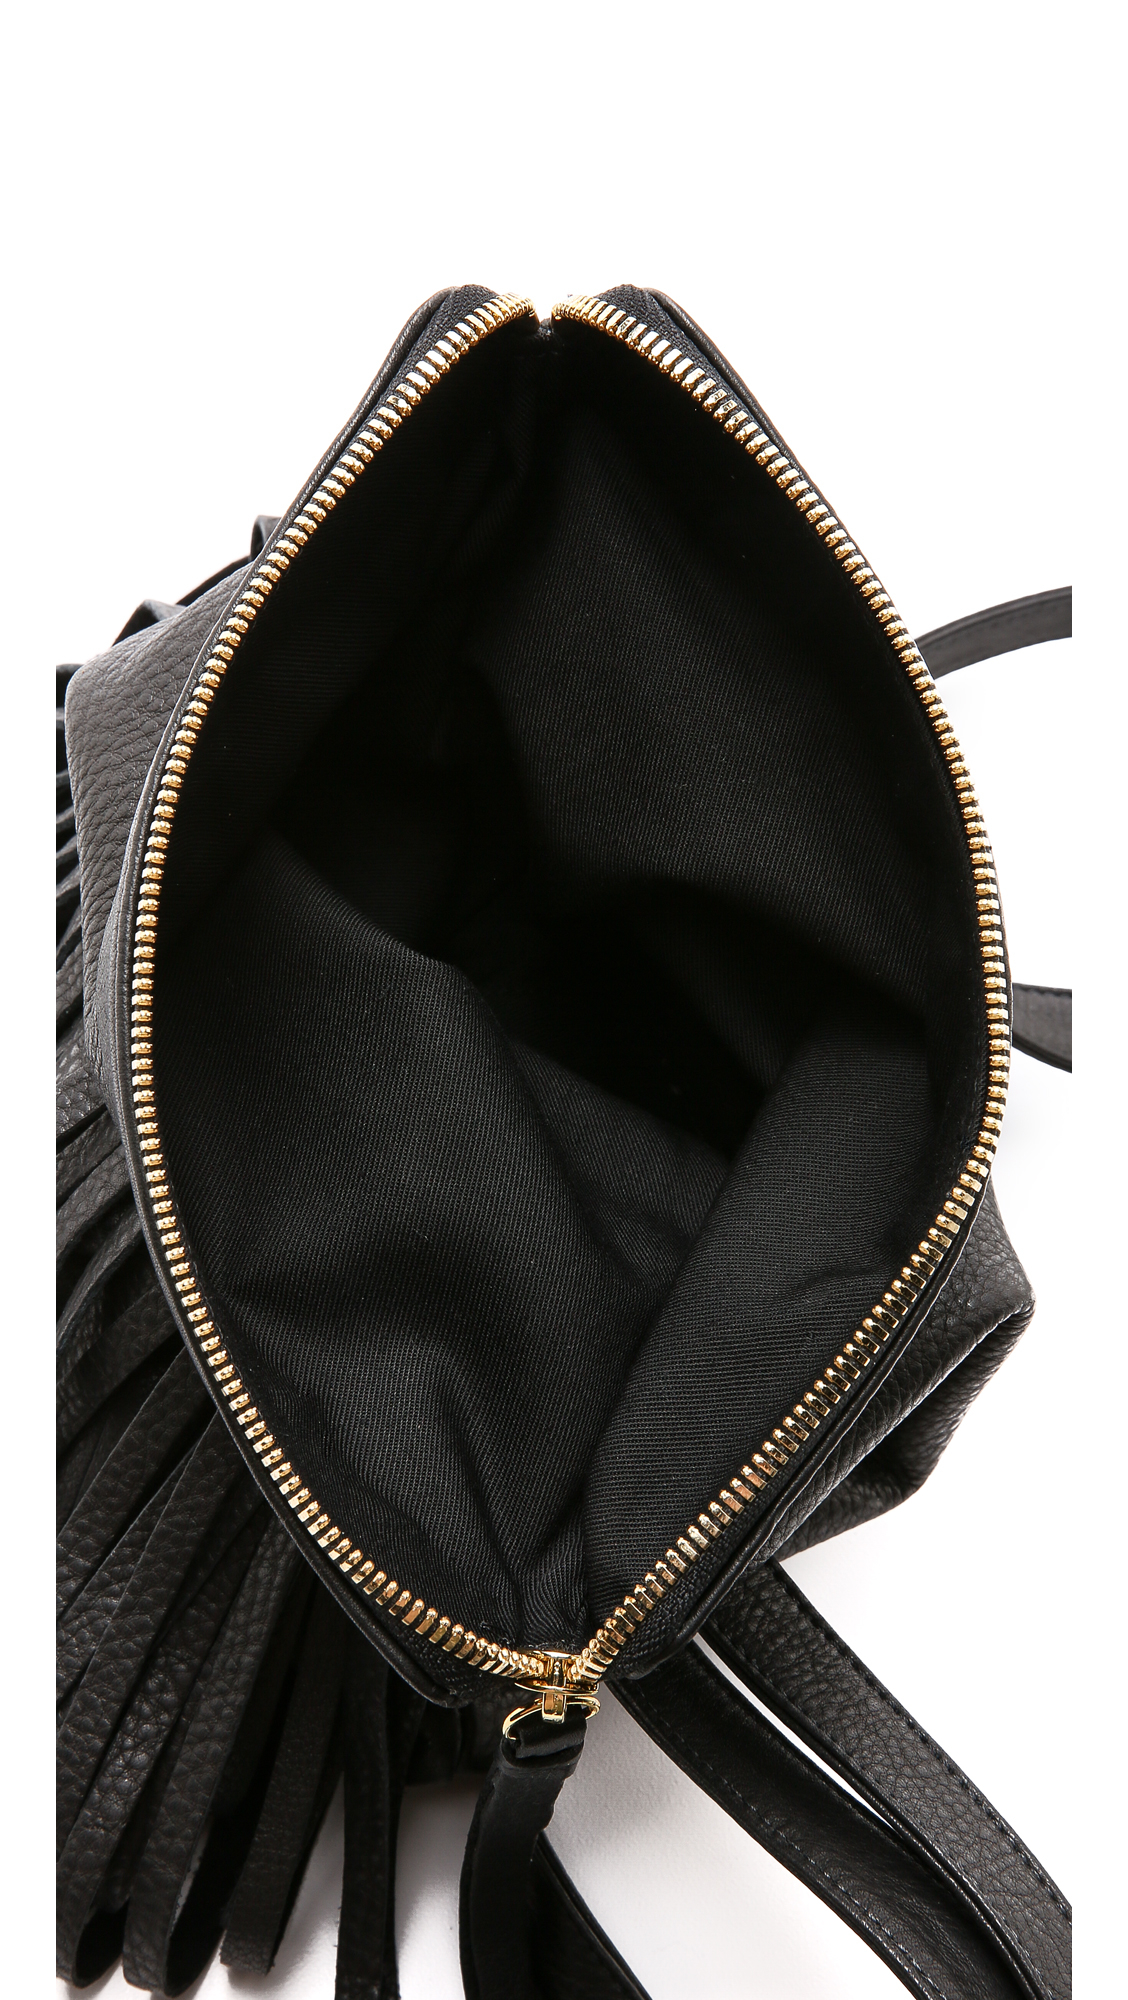 B-Low The Belt Leather Kenzy Cross Body Bag in Black - Lyst